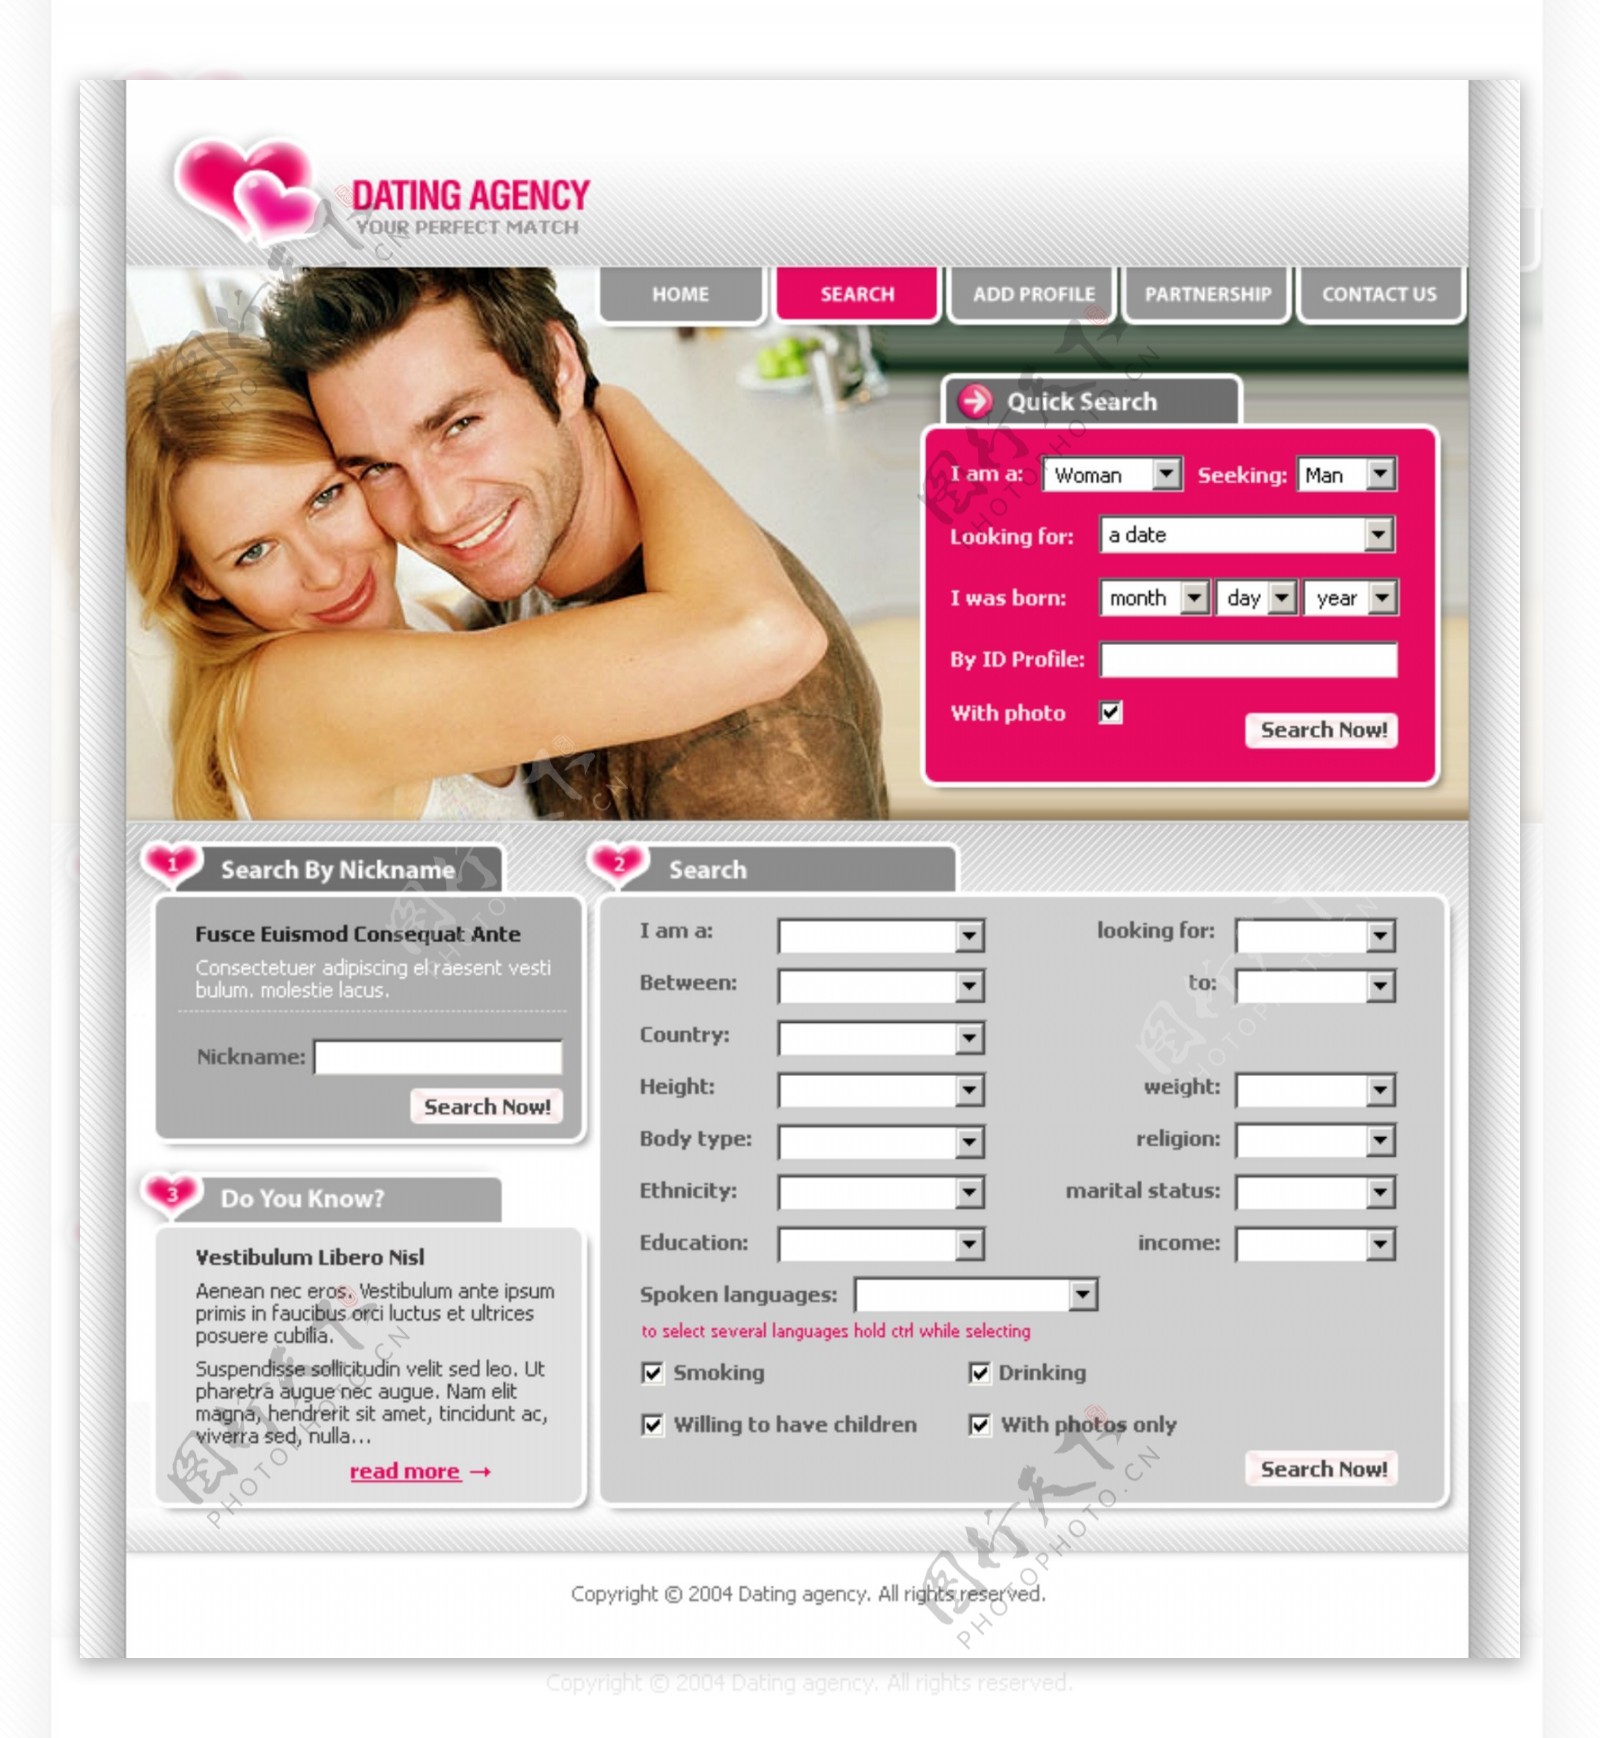 婚姻介绍中心网页模板